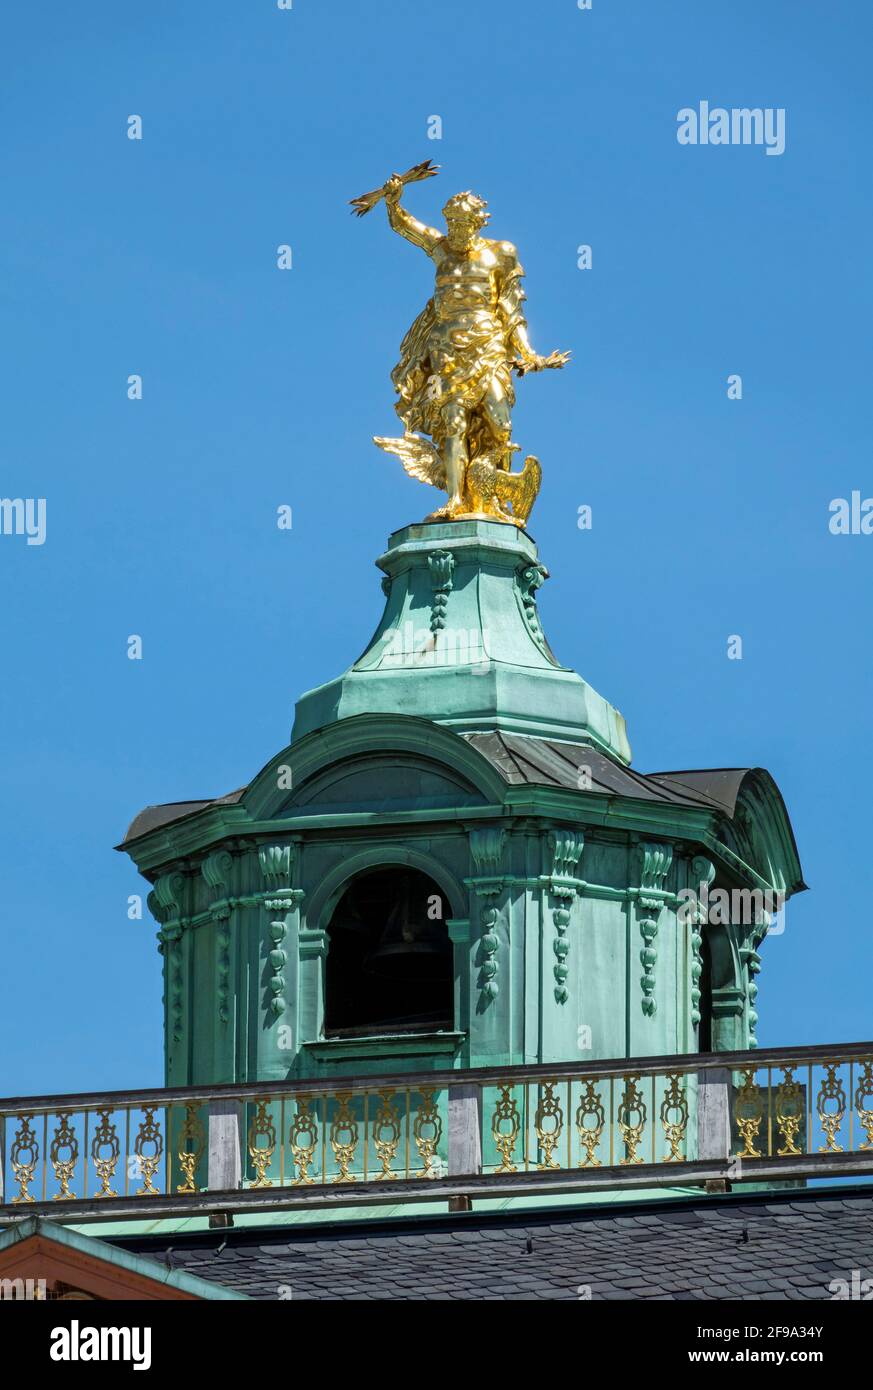 Germania, Baden-Wuerttemberg, Rastatt, palazzo residenziale, il dio Giove fa precipitare i fulmini dal tetto. Popolarmente conosciuto come 'l'uomo d'oro'. Foto Stock